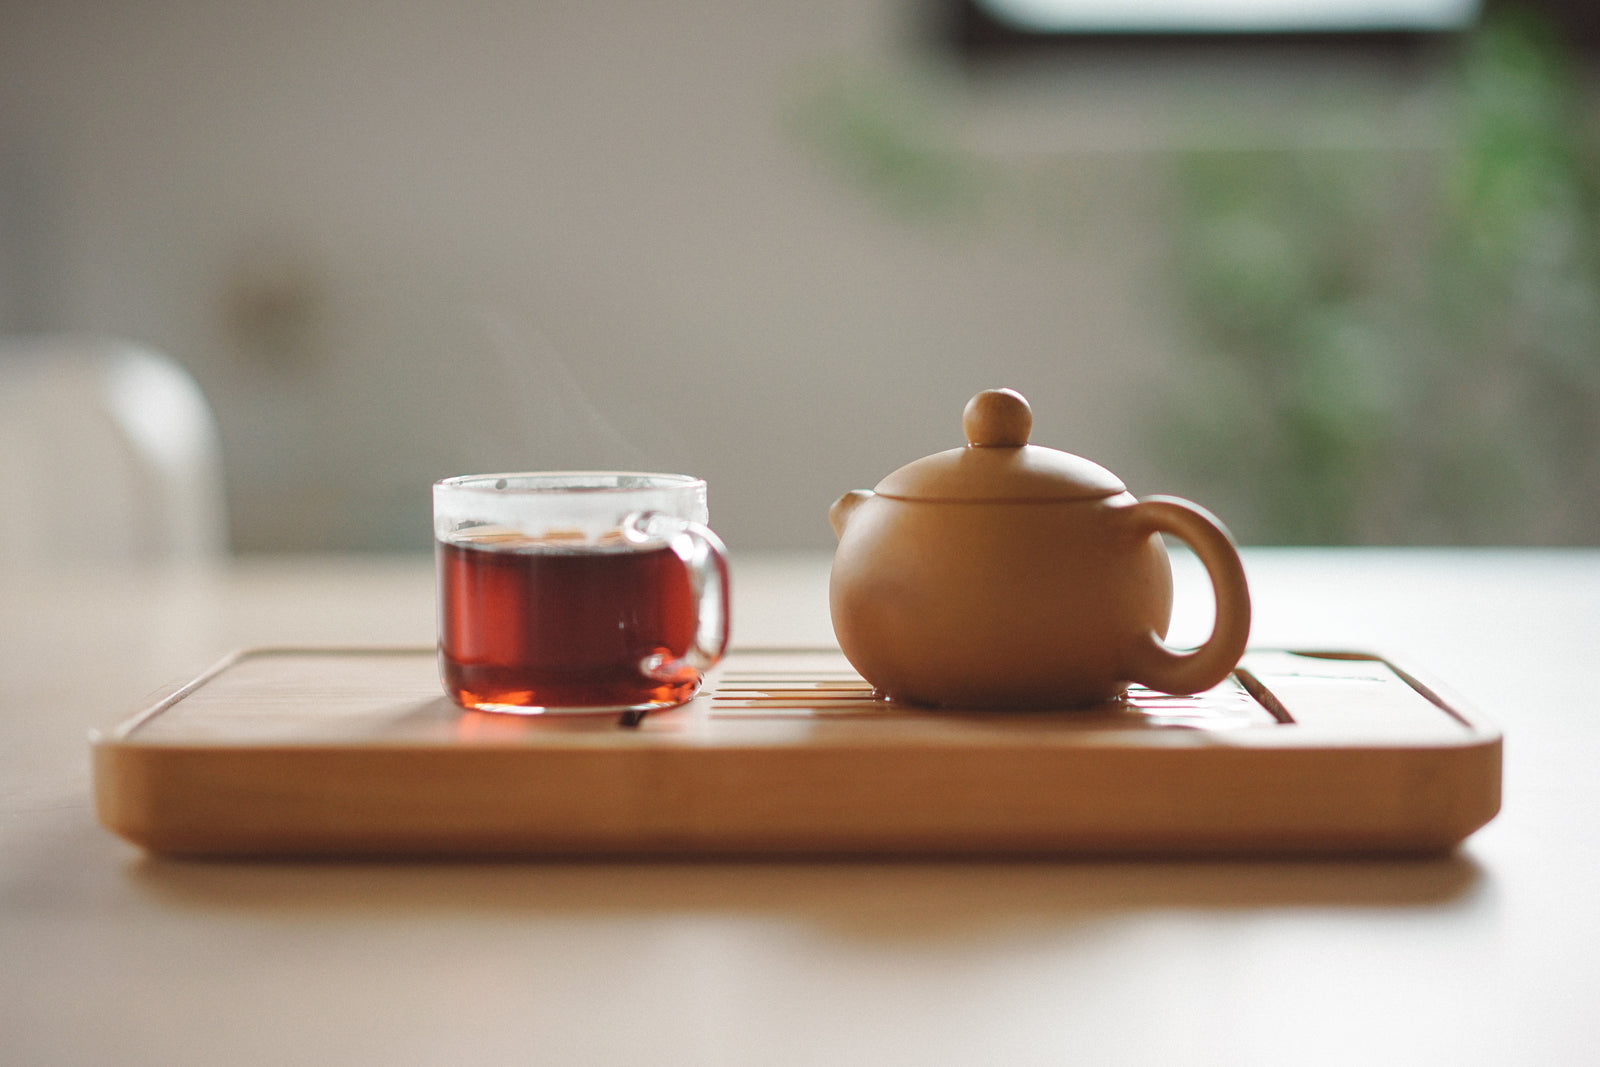 Slik lager du en kopp te - og finn roen på 5 minutter. Foto av Manki Kim på Unsplash